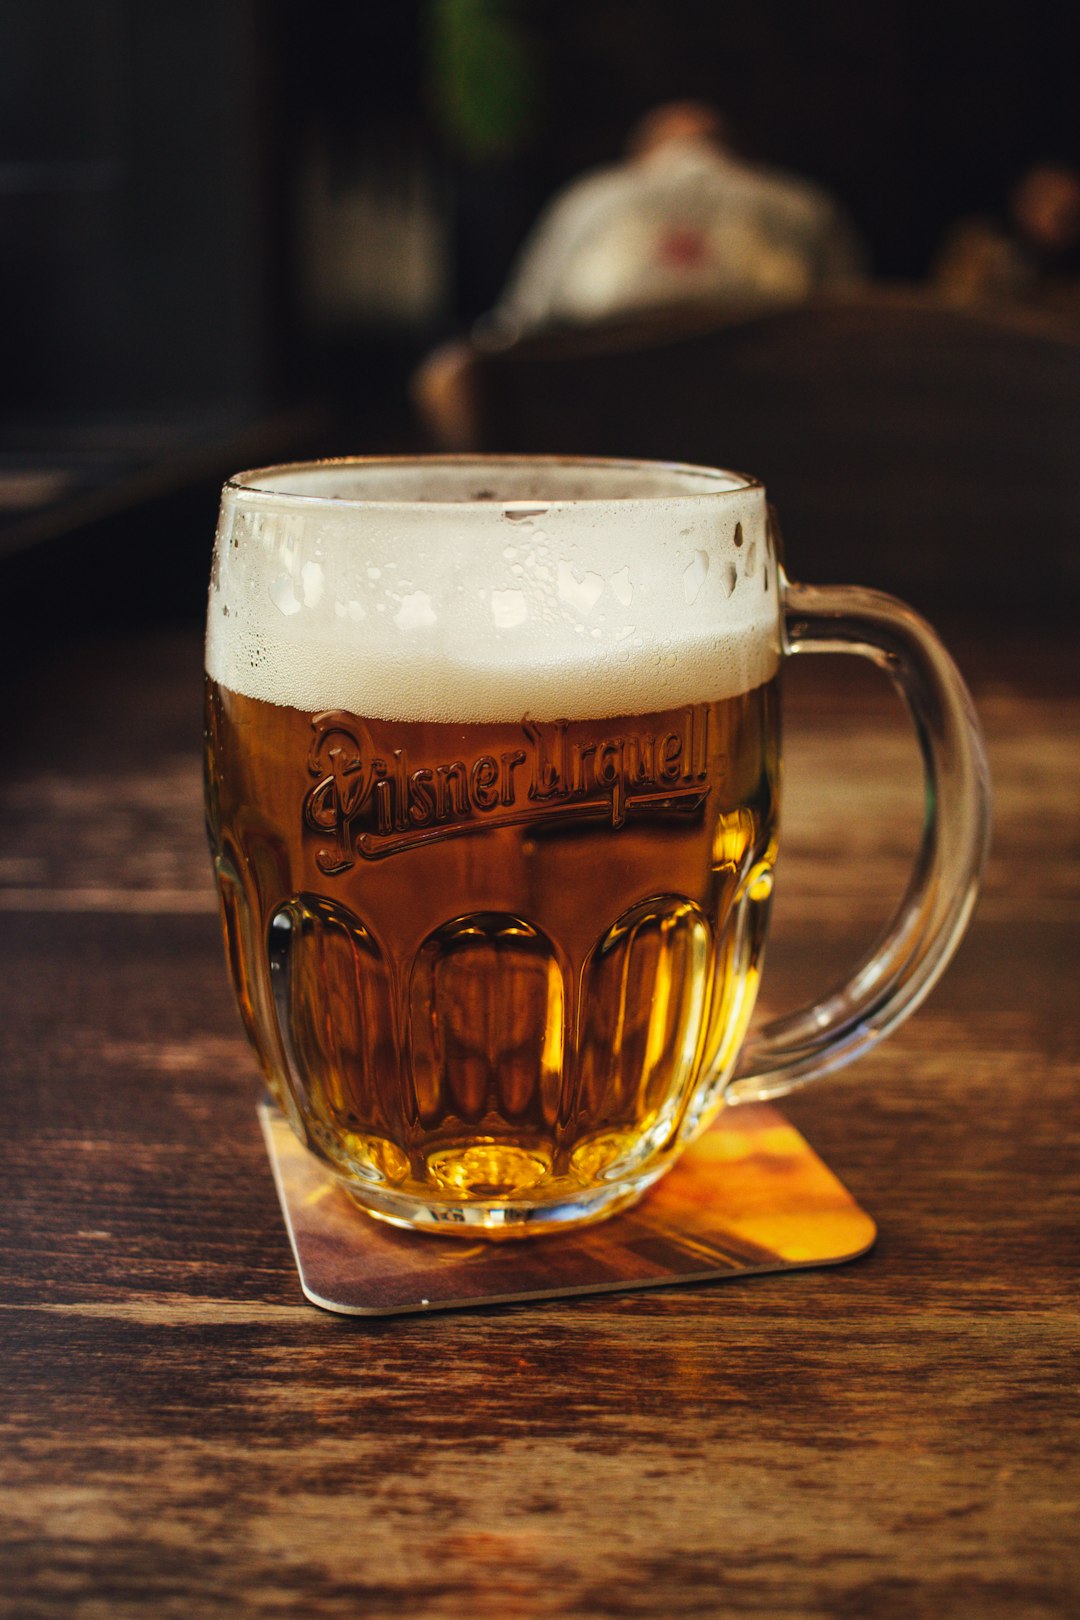 Consumo de cerveja deve ser moderado para ter ‘efeito relaxante’ na quarentena